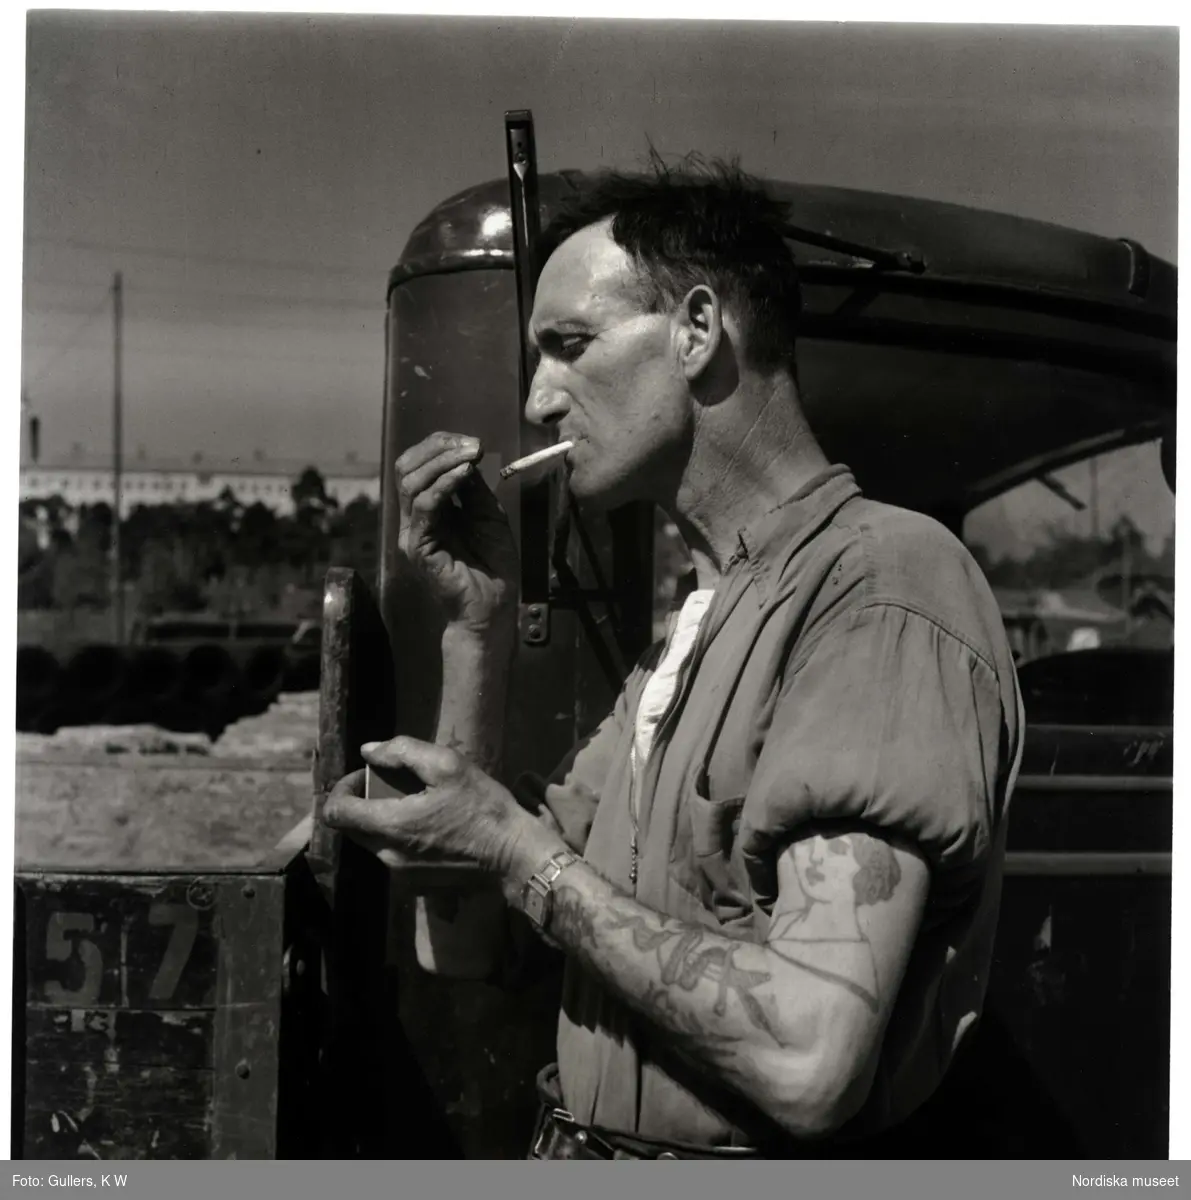 Lastbilschaufför med tatuerade armar tänder cigarett.